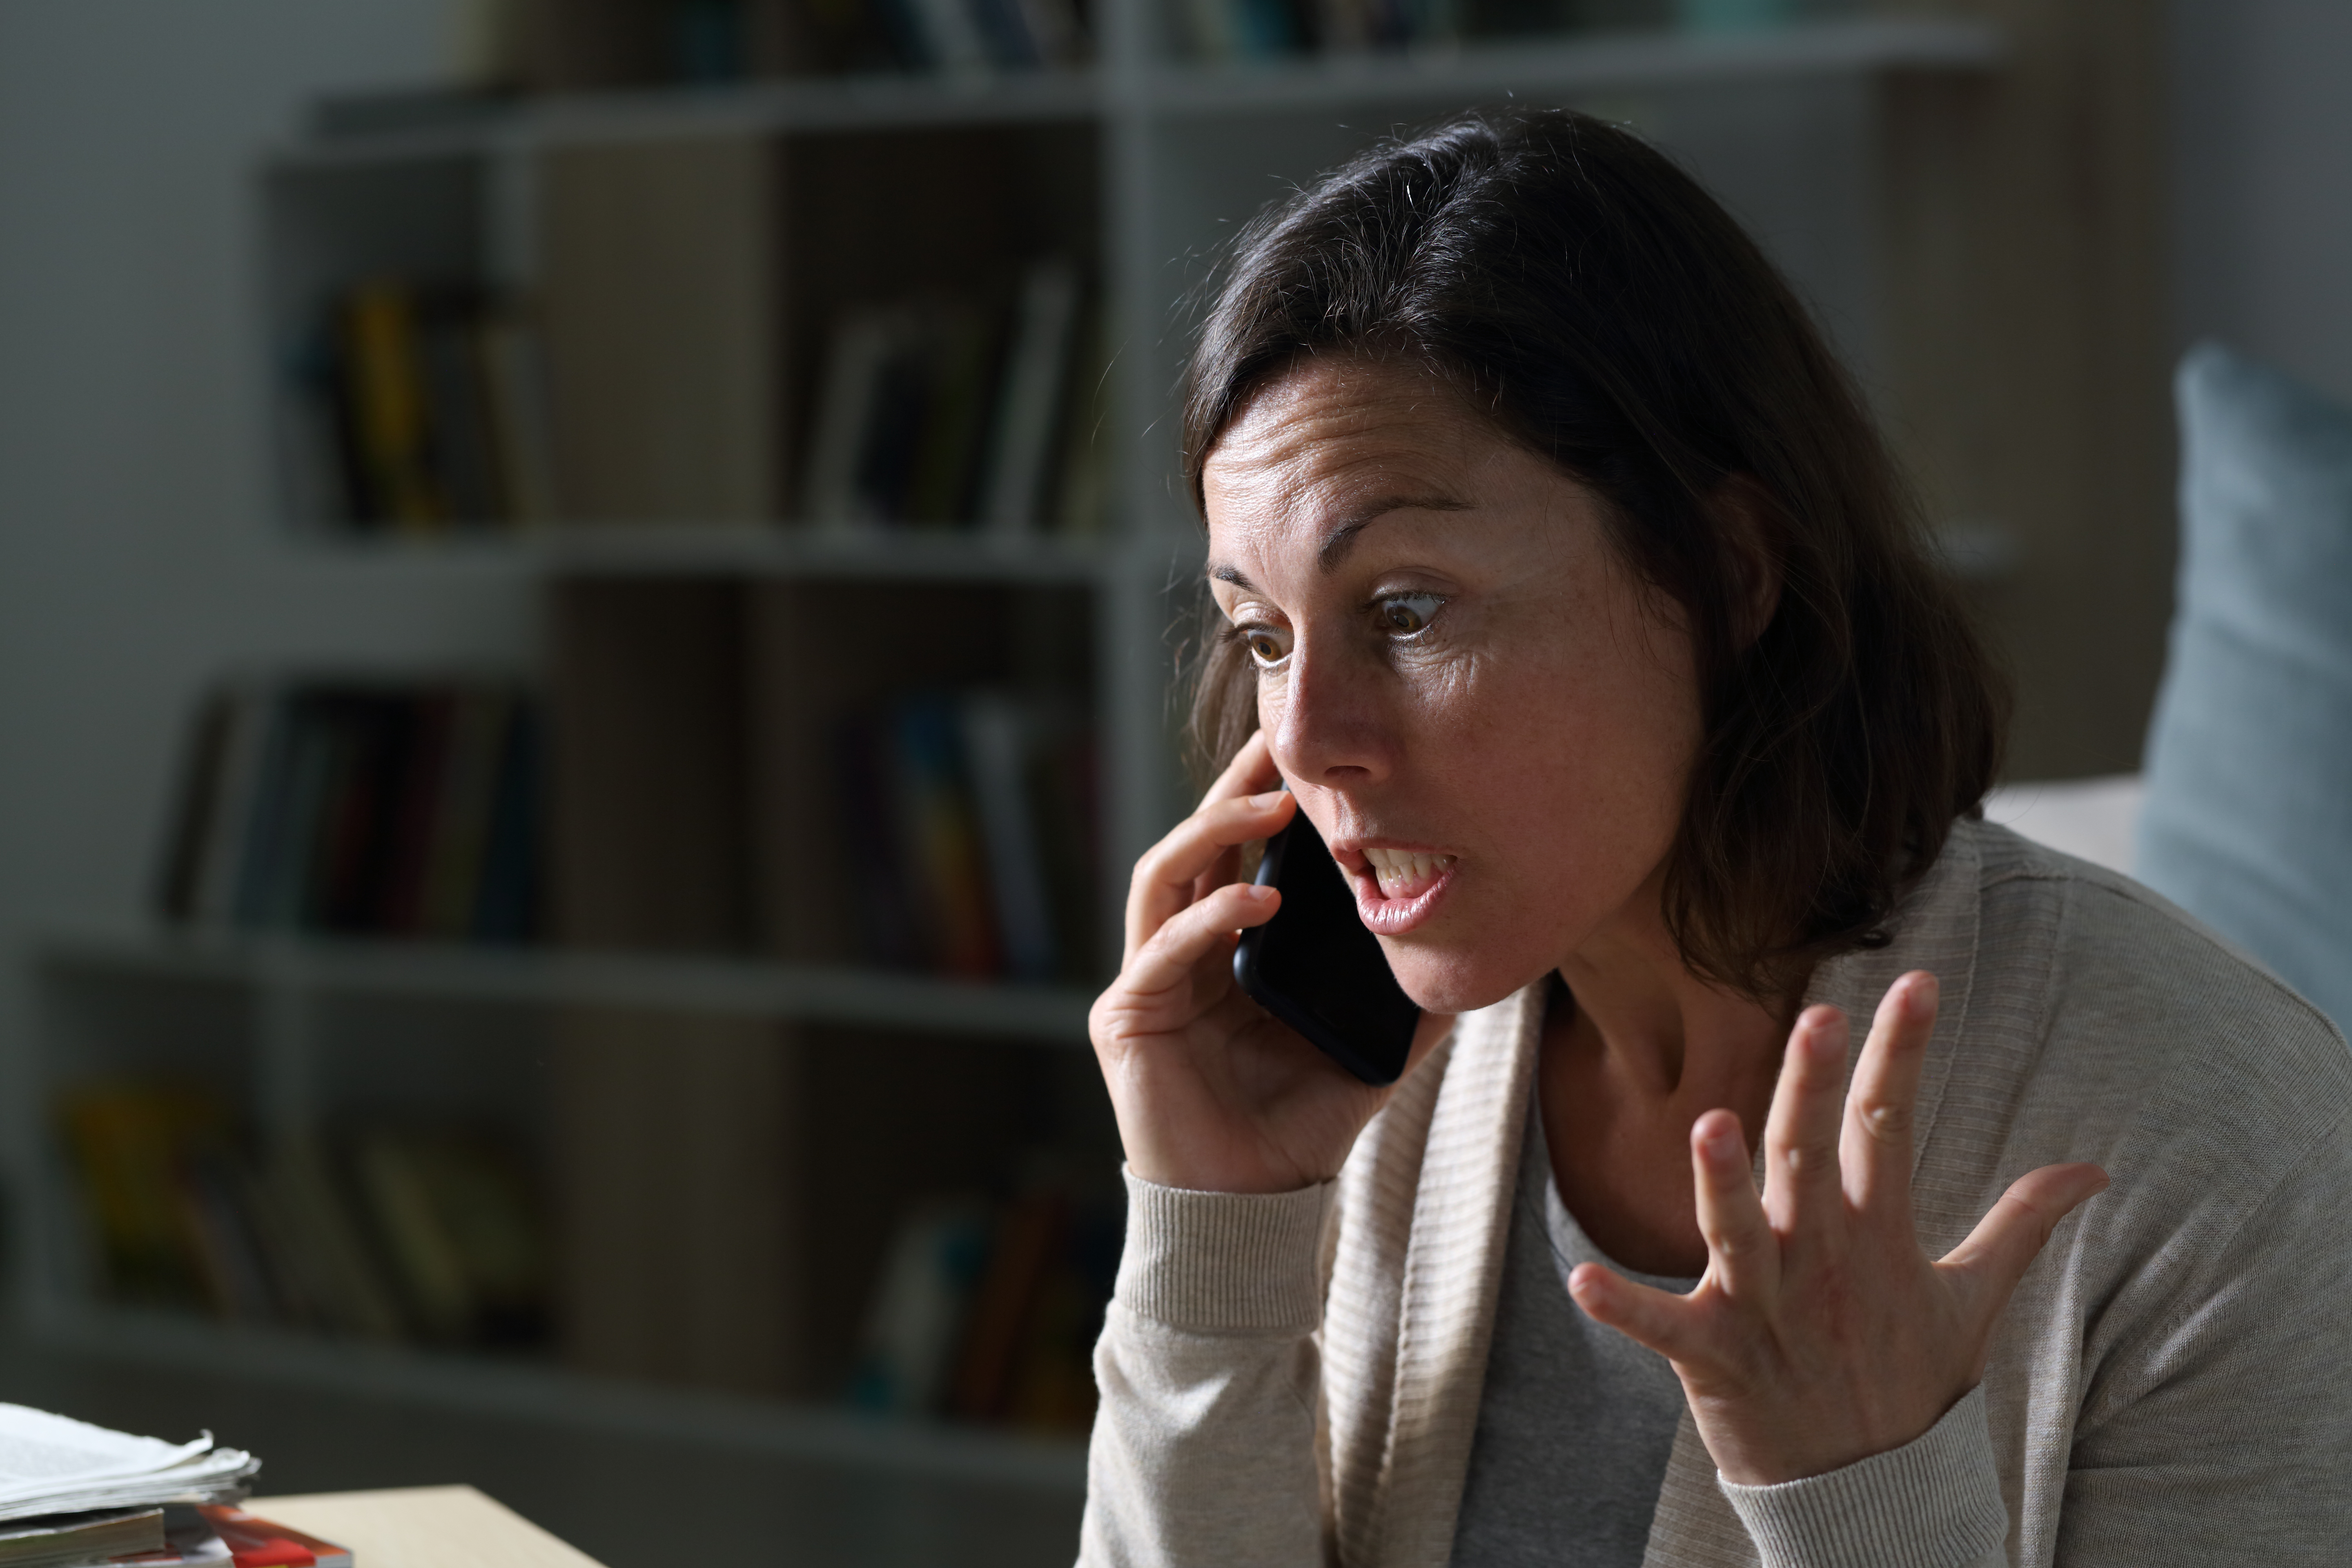 Una mujer enfadada en una llamada | Fuente: Shutterstock